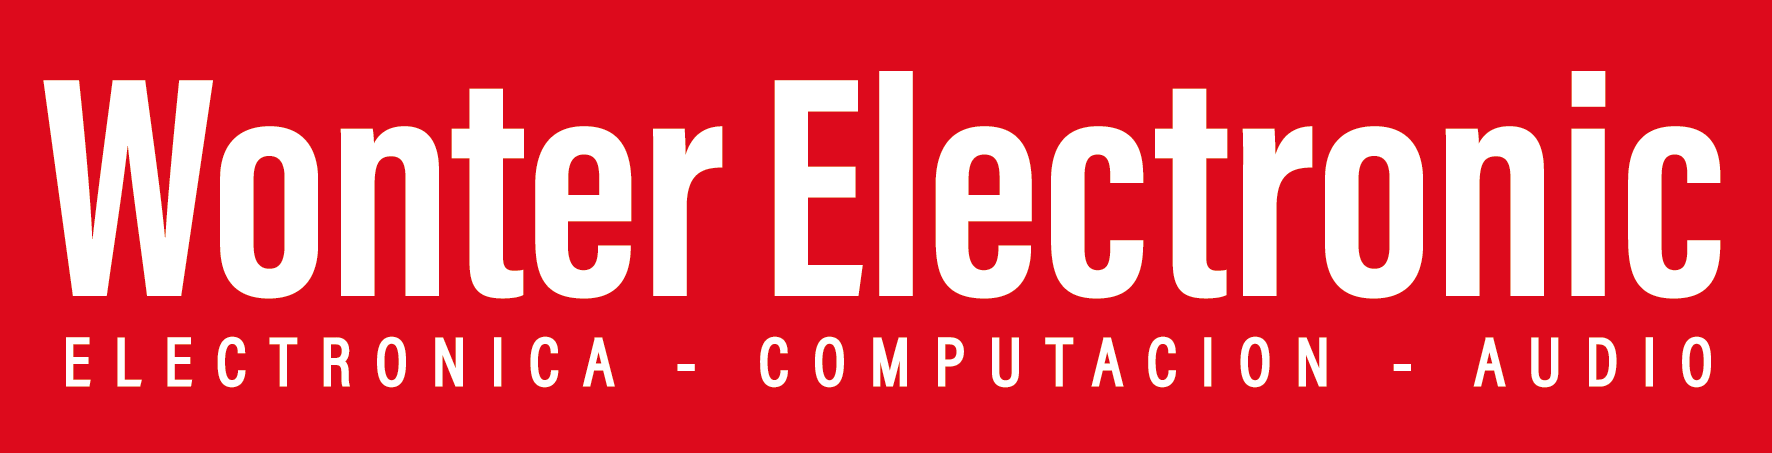 Distribuidora Wonter Electronic